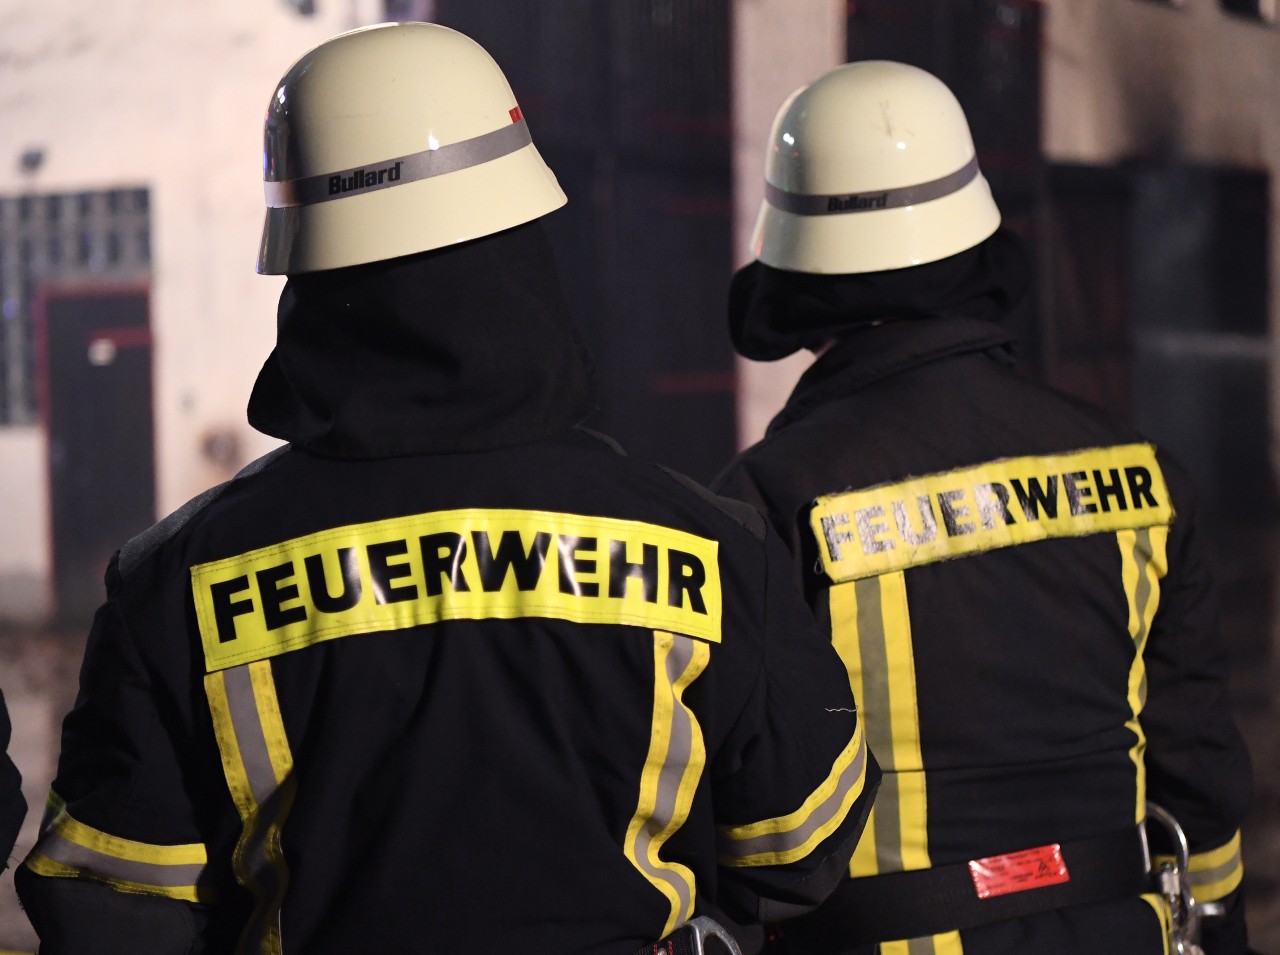 Der Freiwilligen Feuerwehr in Azmannsdorf bei Erfurt platzt jetzt der Kragen. Droht jetzt der Super-Gau? (Symbolbild)

